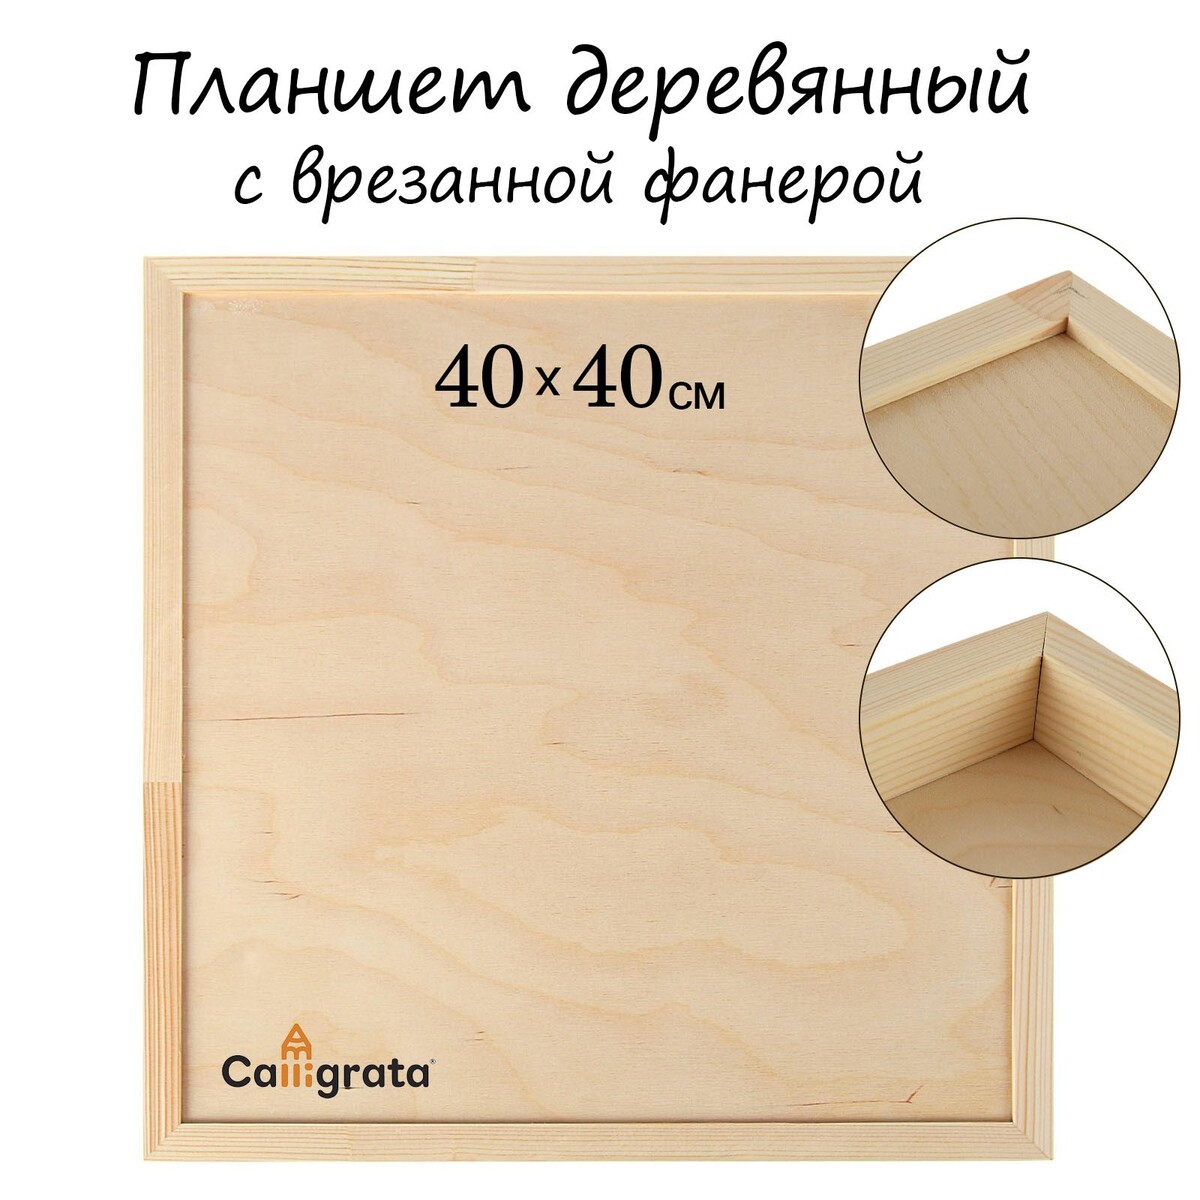 Планшет деревянный, с врезанной фанерой, 40 х 40 х 3,5 см, глубина 0.5 см, сосна планшет деревянный с врезанной фанерой 20 х 30 х 3 5 см глубина 0 5 см сосна